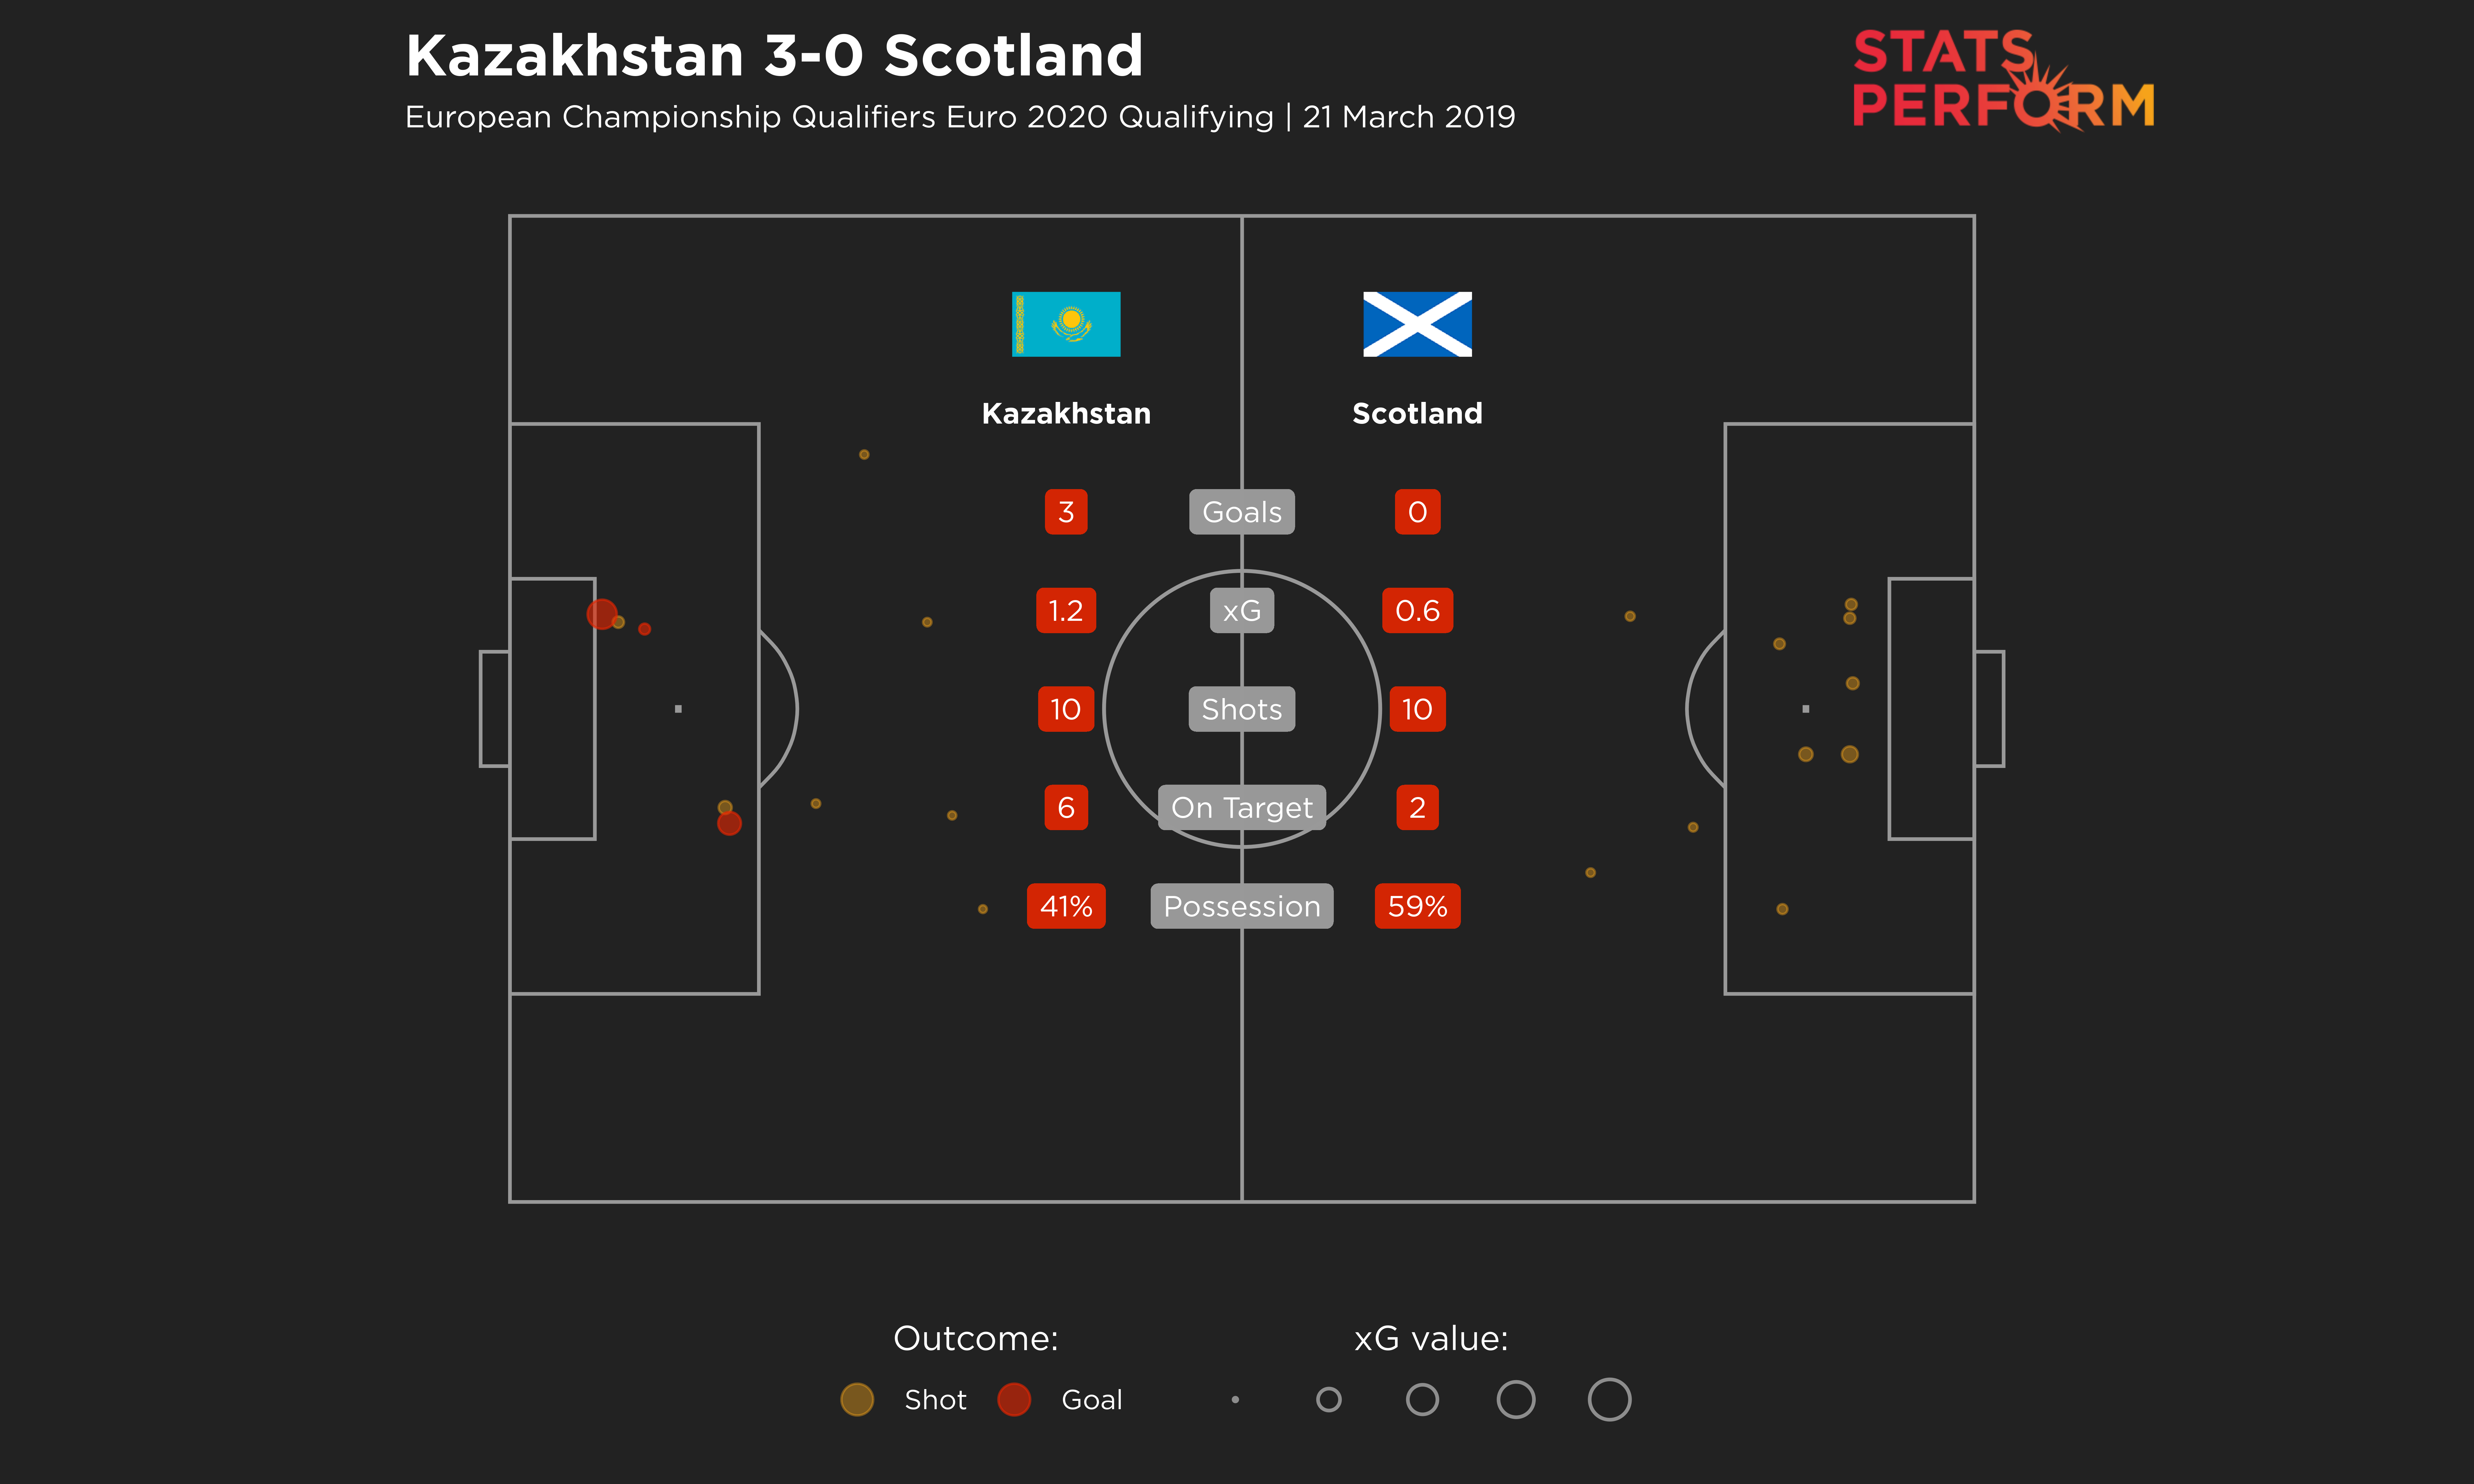 Kazakhstan vs Scotland